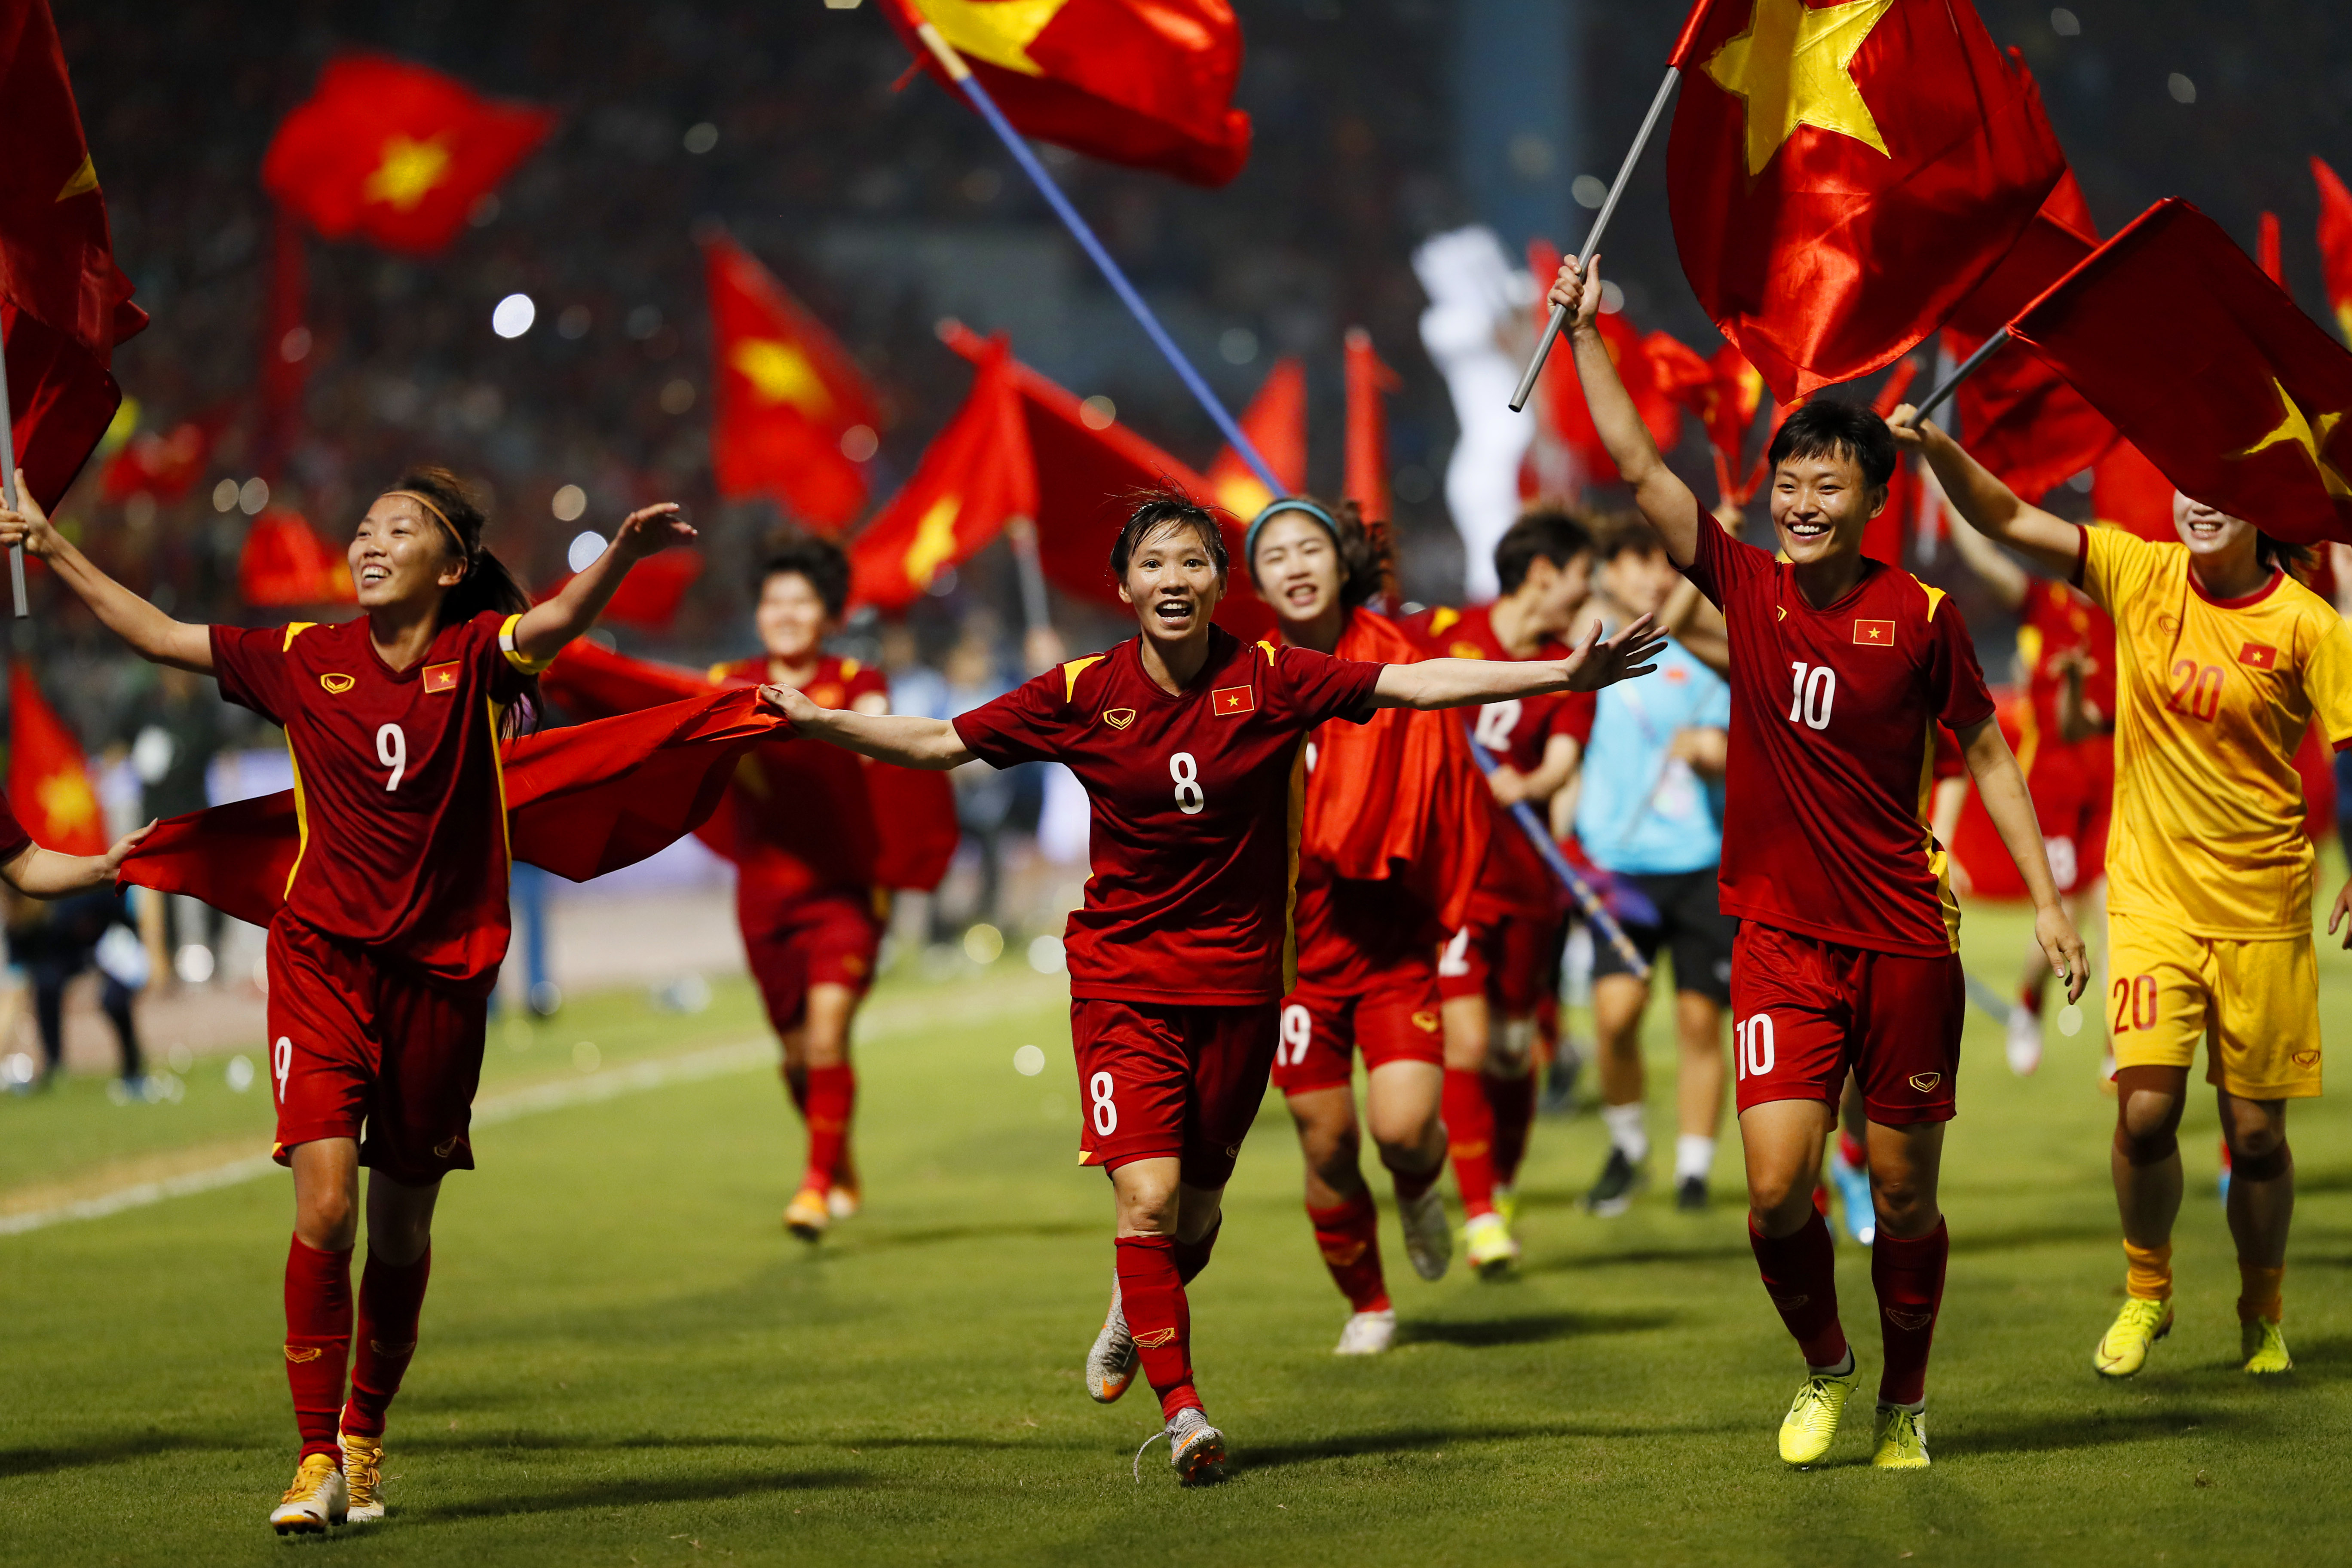 Tuyển nữ Việt Nam: Các cô gái trẻ, tài năng và xinh đẹp của đội tuyển nữ Việt Nam luôn có những pha chuyền bóng đầy kỹ thuật và những cú sút bóng chính xác đến hoàn hảo. Cảm xúc khi thấy những cô gái đóng trên sân cỏ là không thể nào quên được.